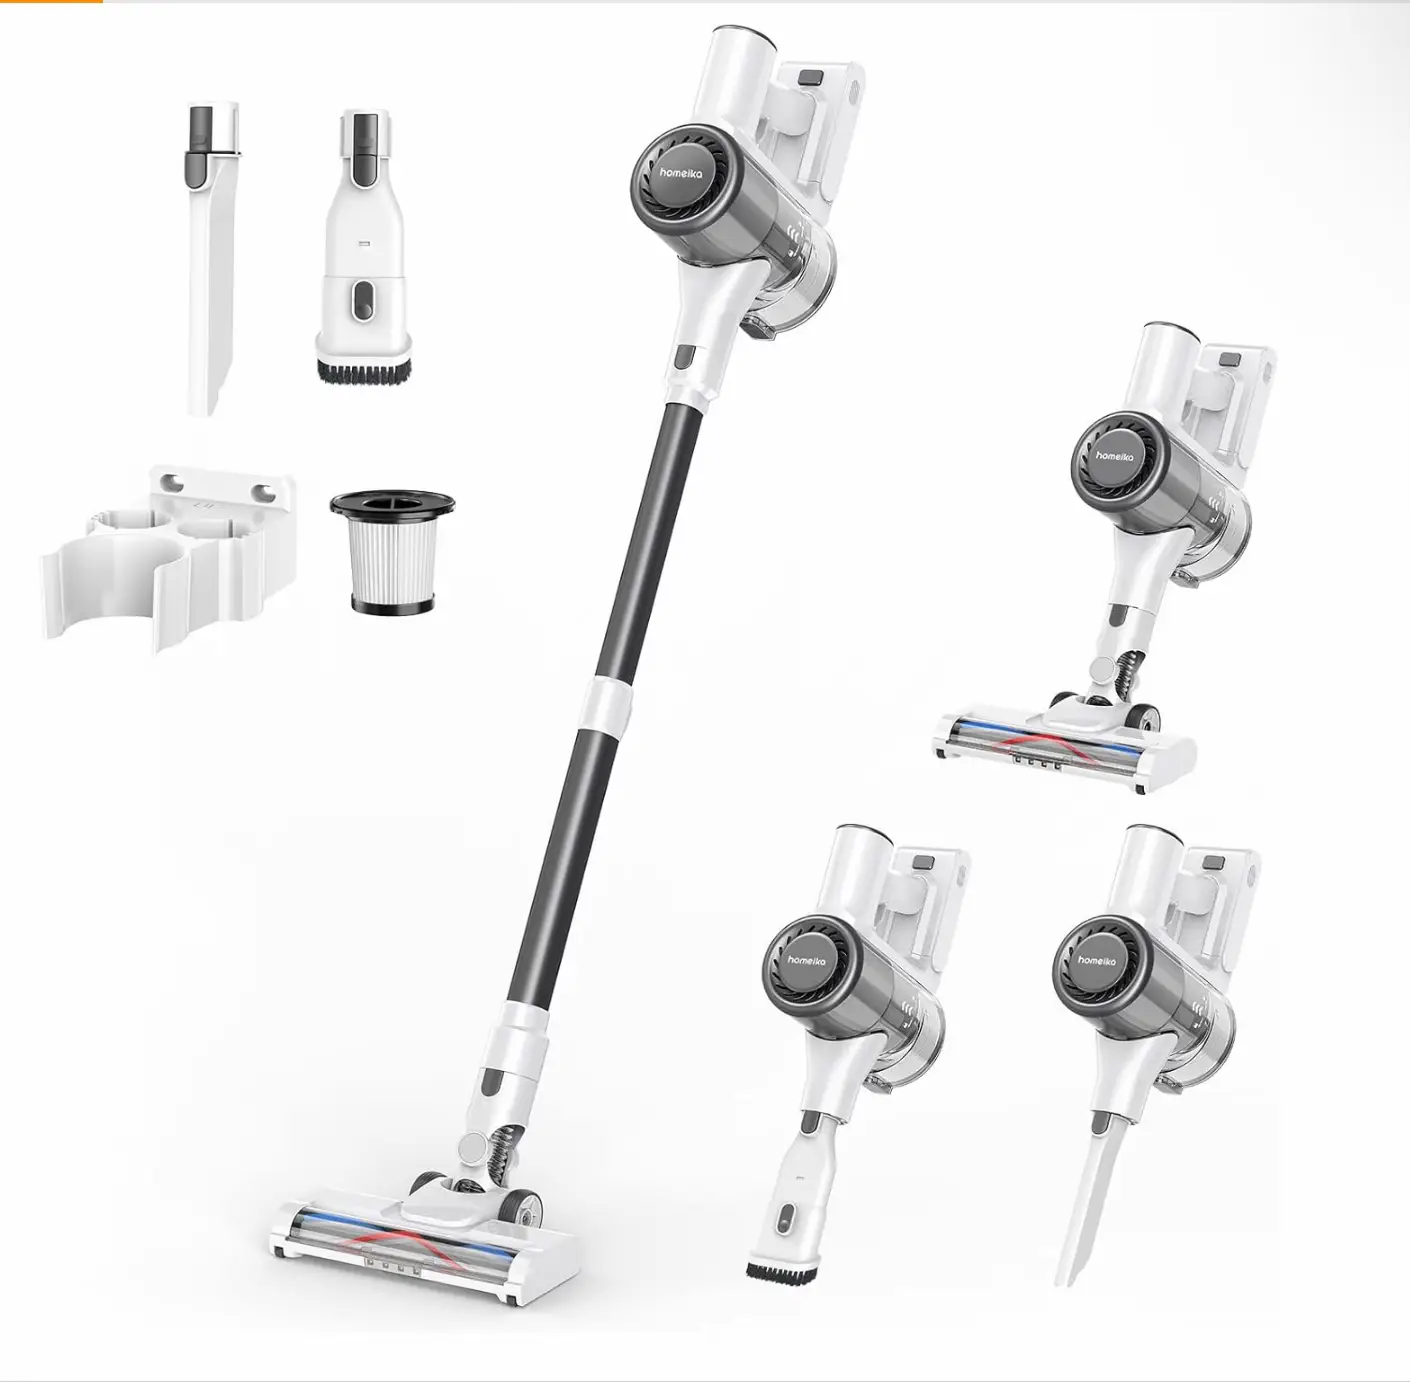 Sticker Film Filter Brush For xiaomi Robot Vacuum S12 Robot Vacuum Cleaner  Parts Accessories